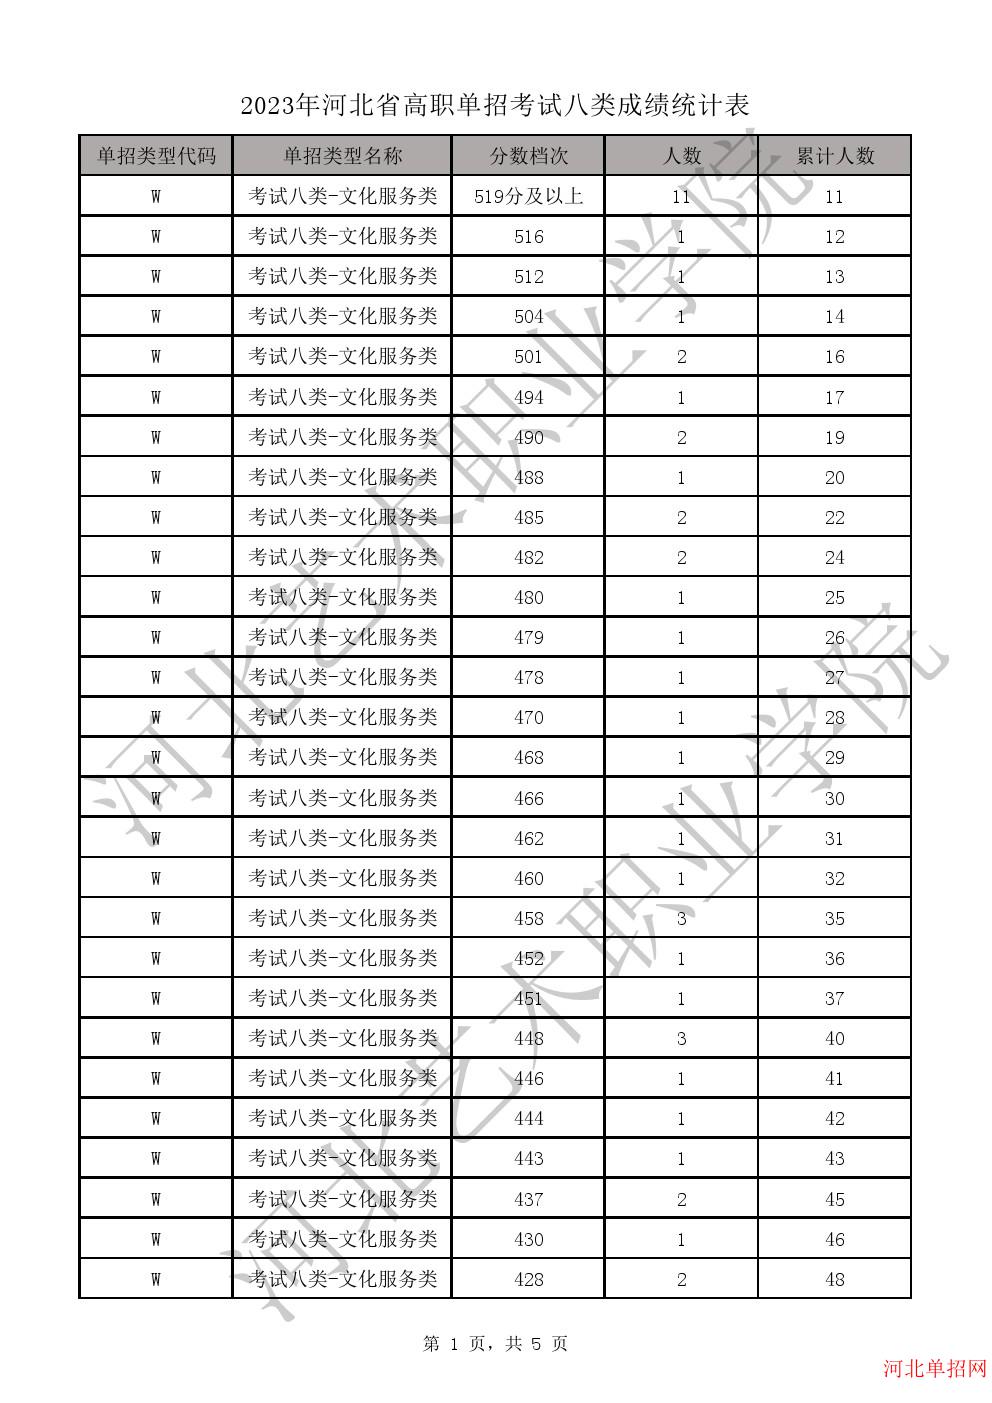 2023年河北省高职单招考试八类成绩统计表-W文化服务类一分一档表 图1